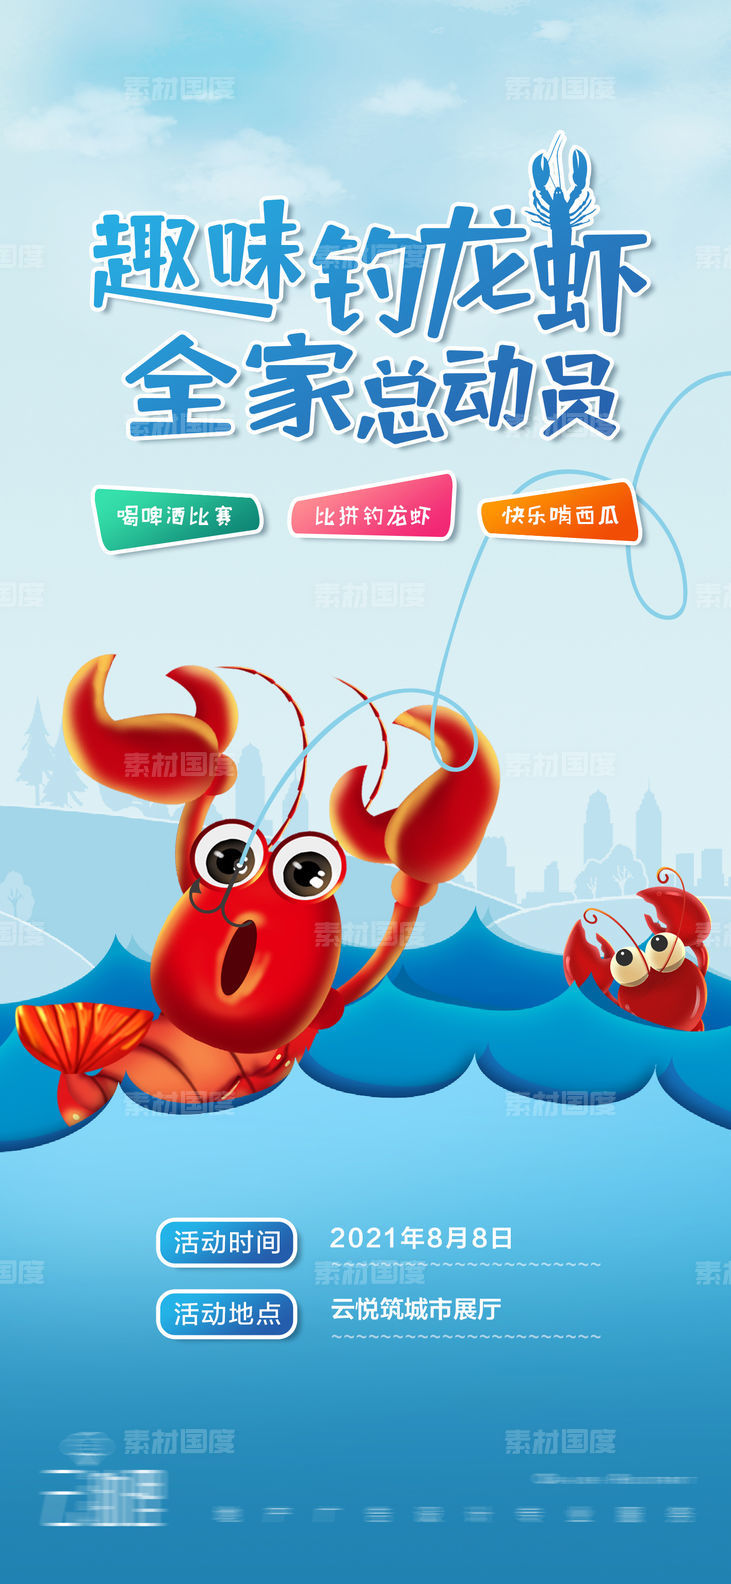 钓龙虾比赛活动海报